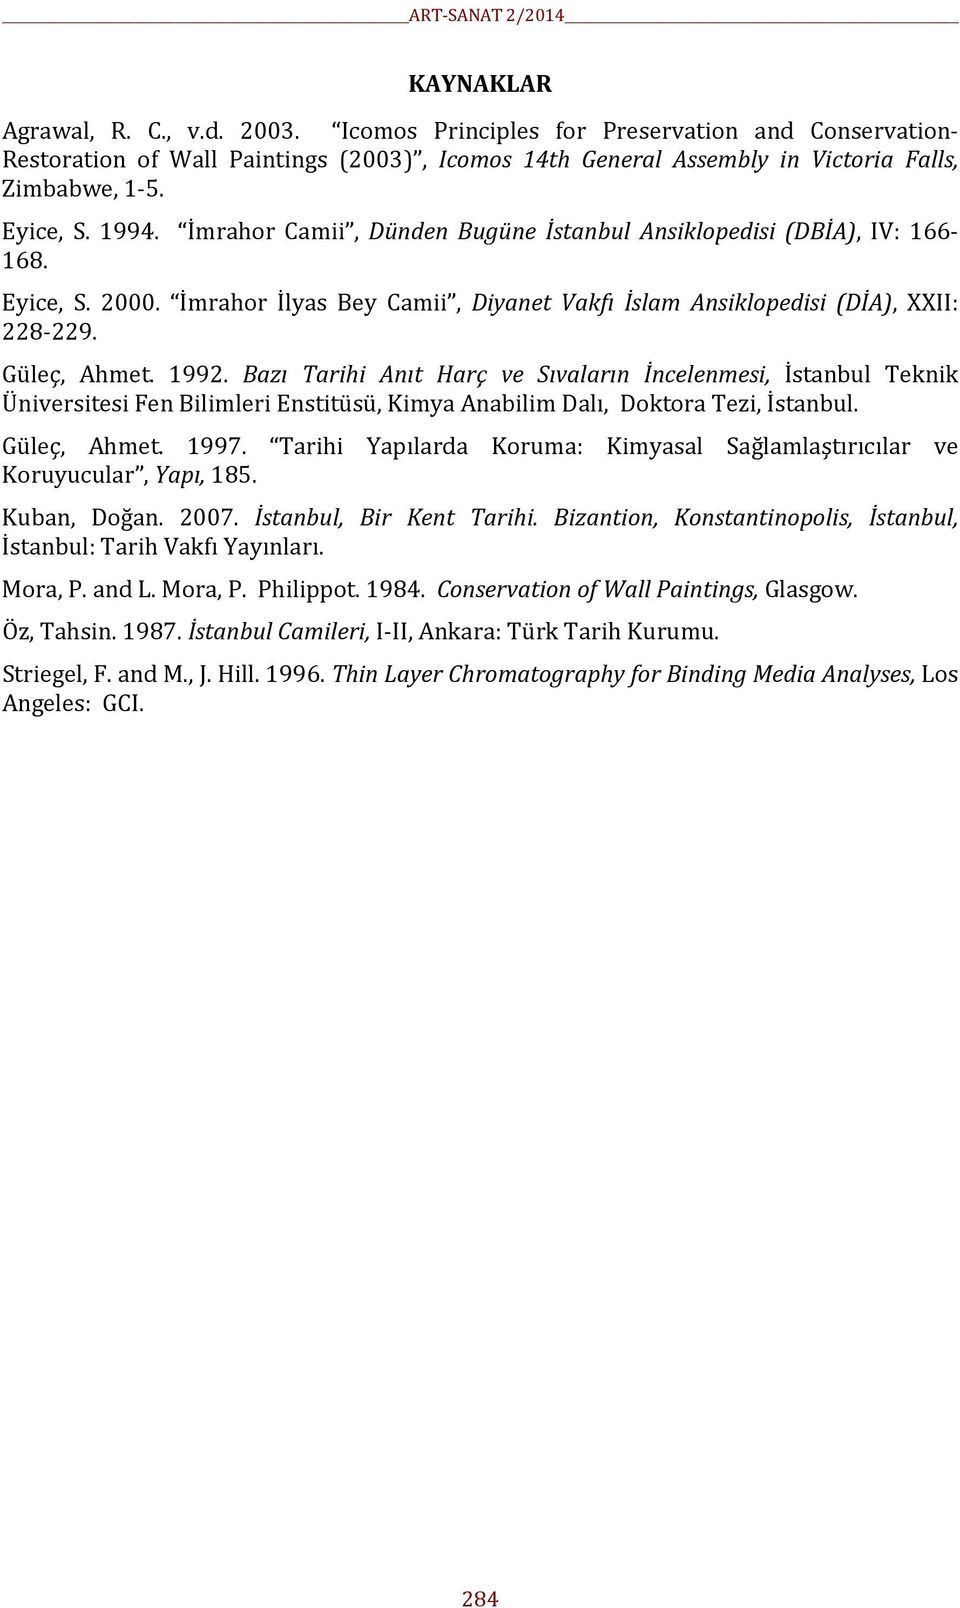 Bazı Tarihi Anıt Harç ve Sıvaların İncelenmesi, İstanbul Teknik Üniversitesi Fen Bilimleri Enstitüsü, Kimya Anabilim Dalı, Doktora Tezi, İstanbul. Güleç, Ahmet. 1997.